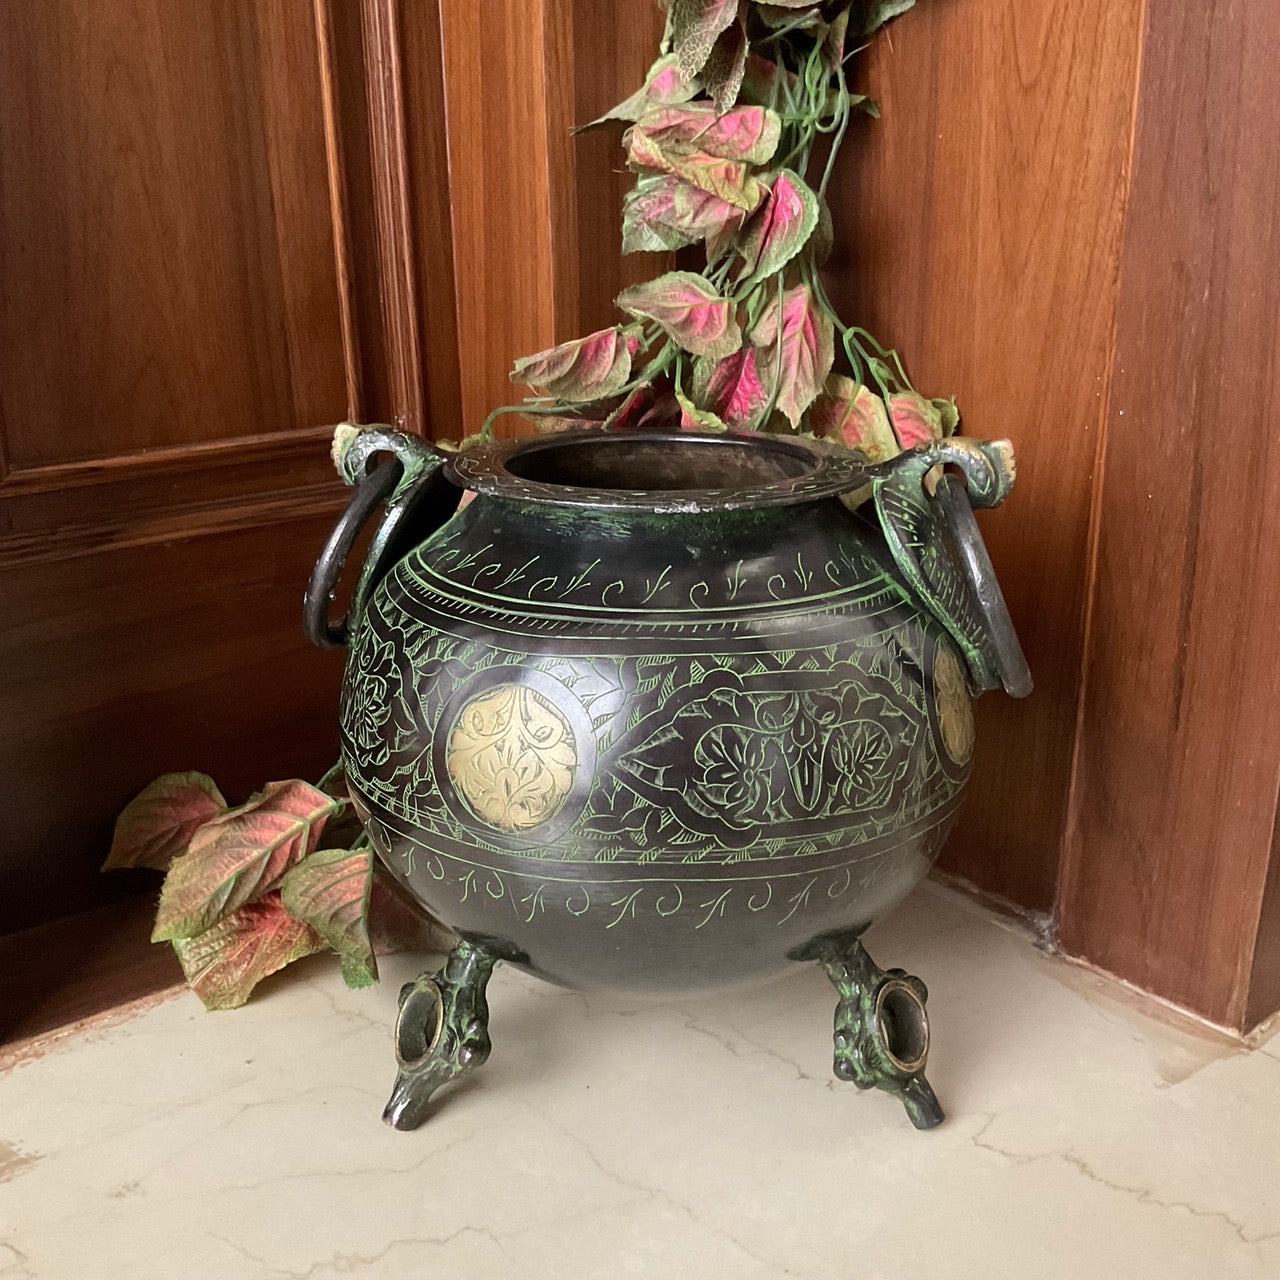 Vase & Pots, Indian Home Decor